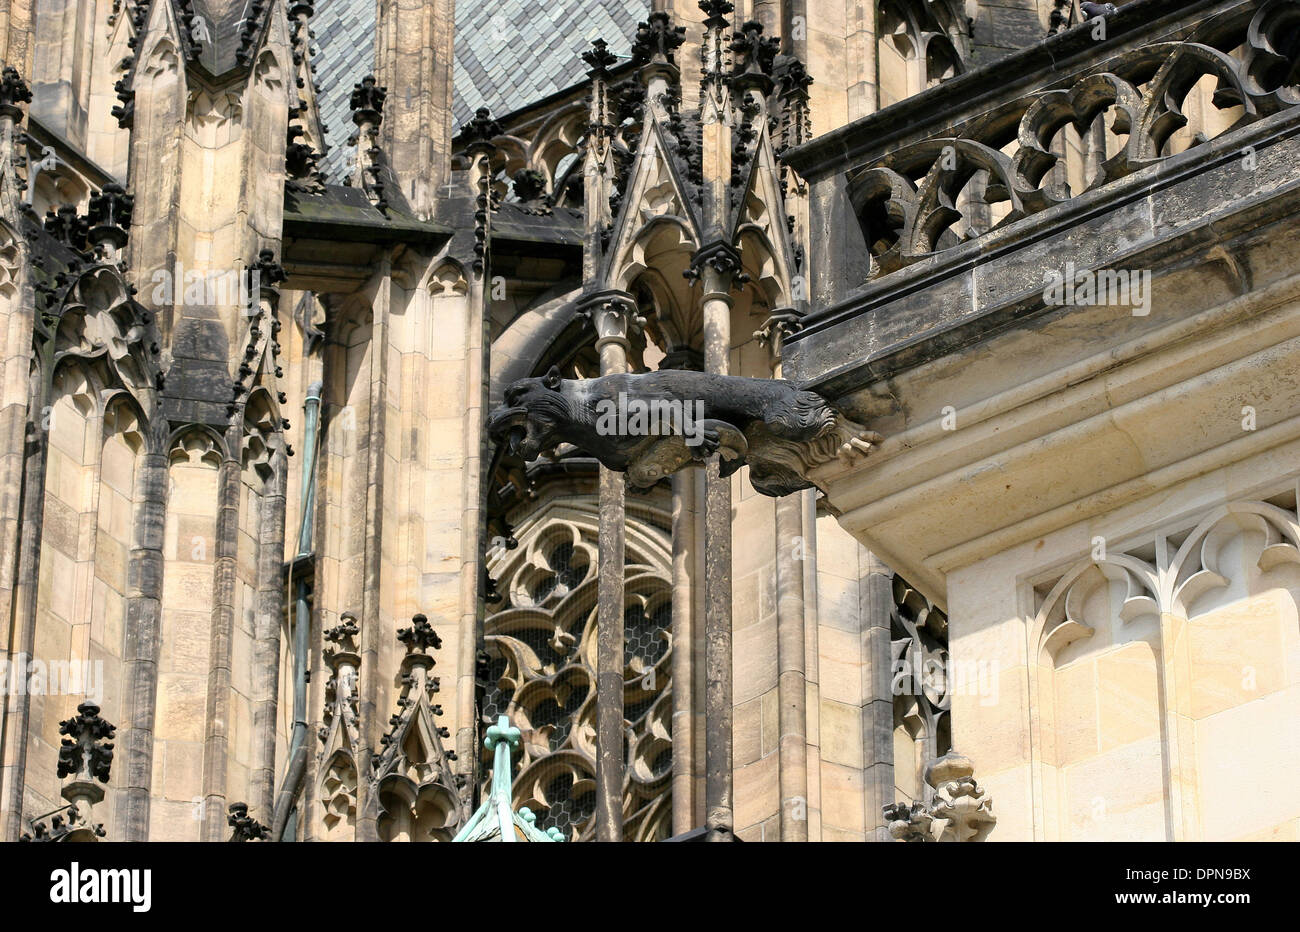 Tschechische Republik. Prag. St.-Veits-Dom. Gotischen Stil. 14. Jahrhundert. Details Wasserspeier. Stockfoto